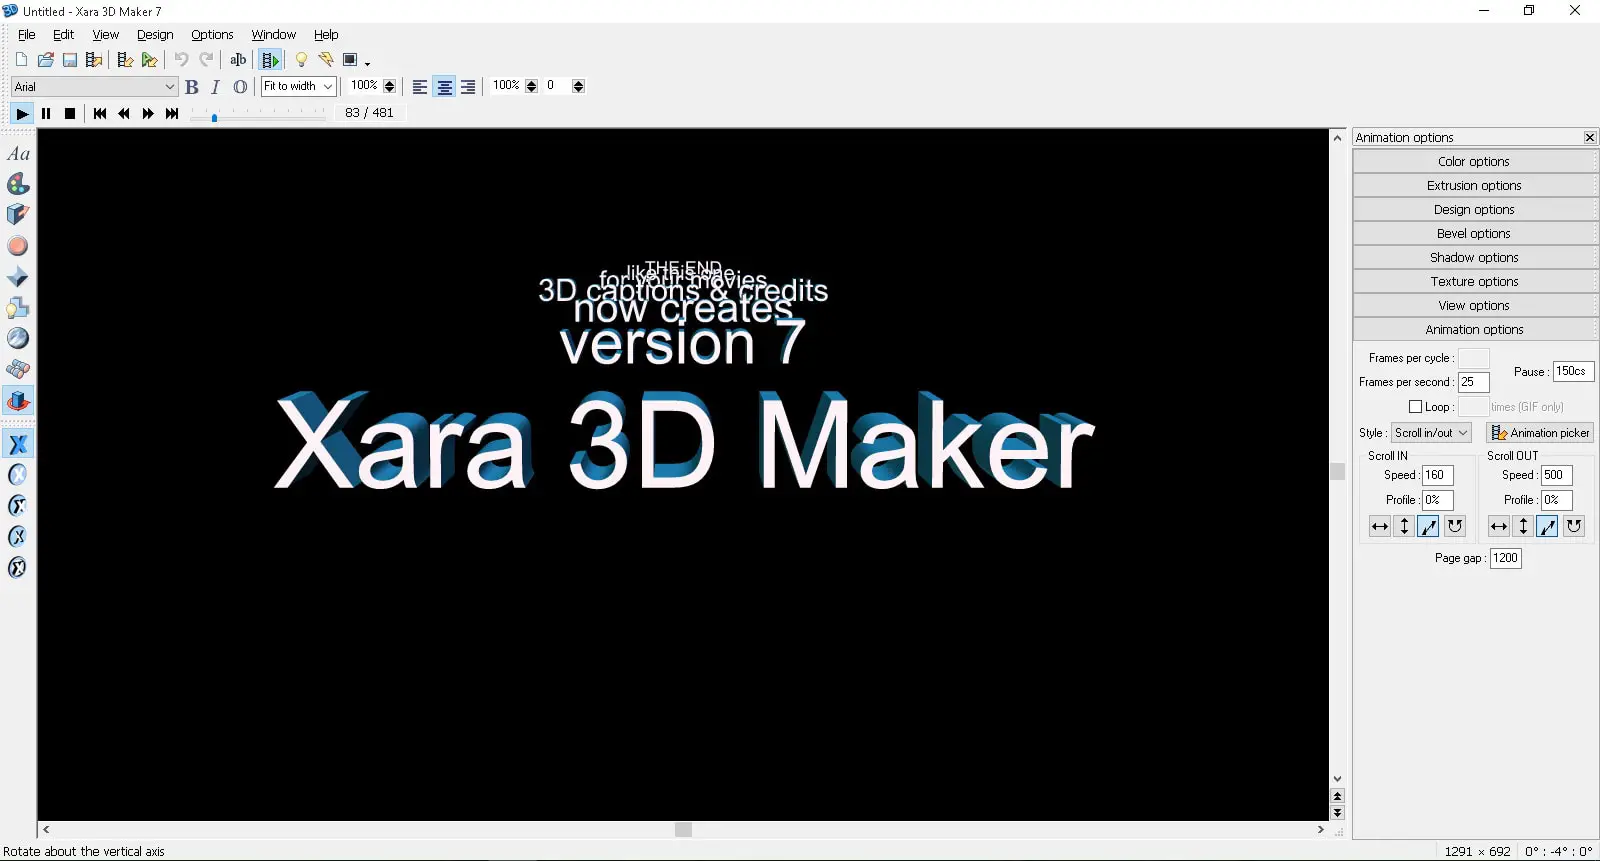 Xarad 3D Maker 7 New File